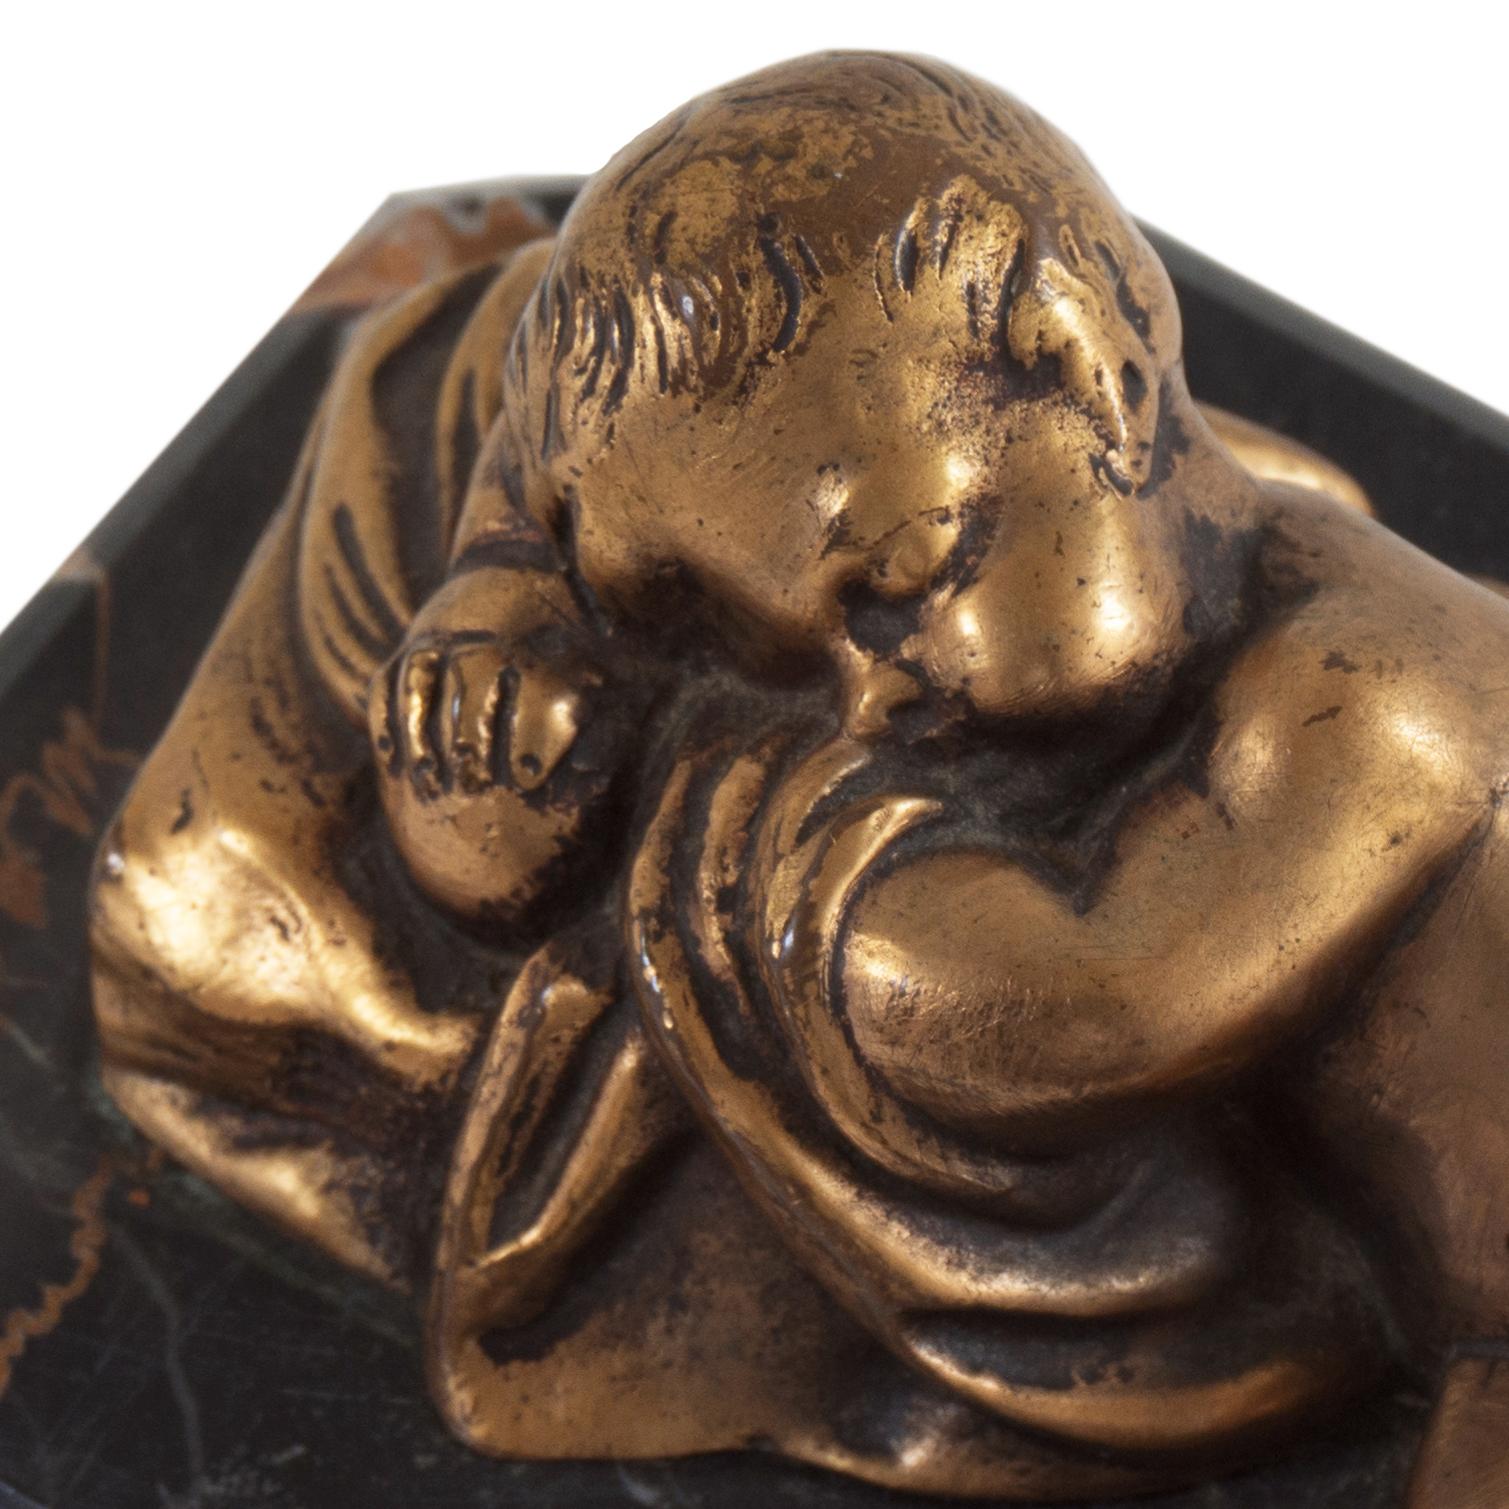  Kleine Beaux-Arts-Skulptur „Sleeping Cherub“ aus vergoldeter Bronze auf Portoro-Marmorsockel 1